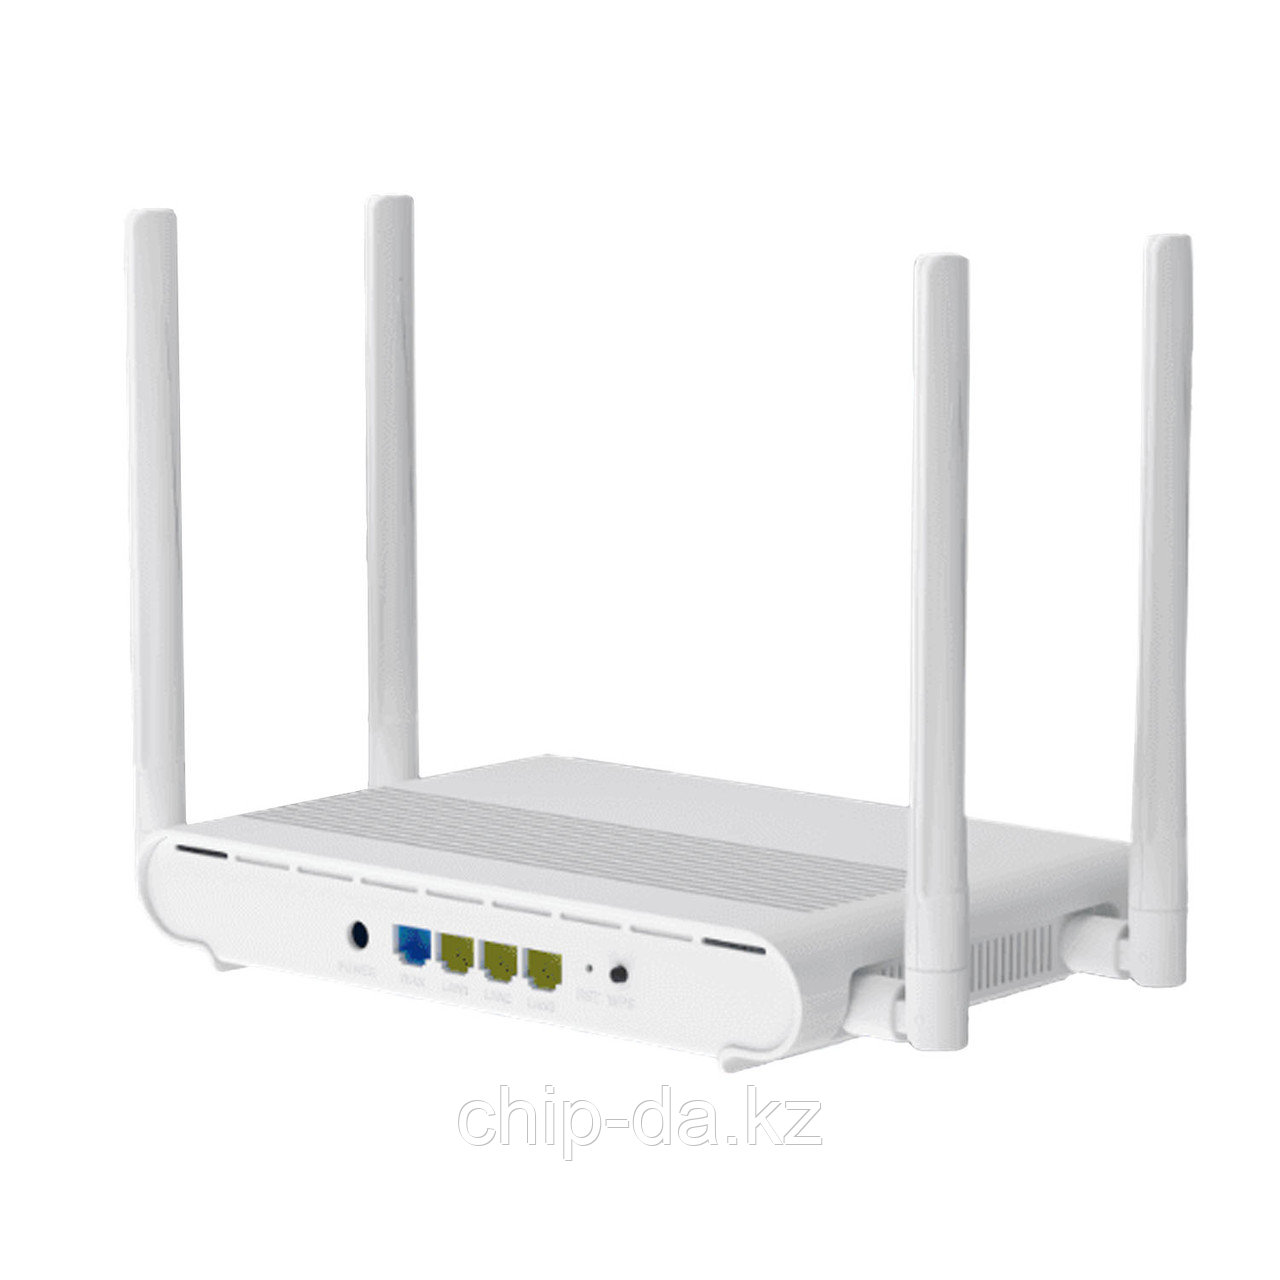 Wi-Fi роутер Edup EP-AX1800GS